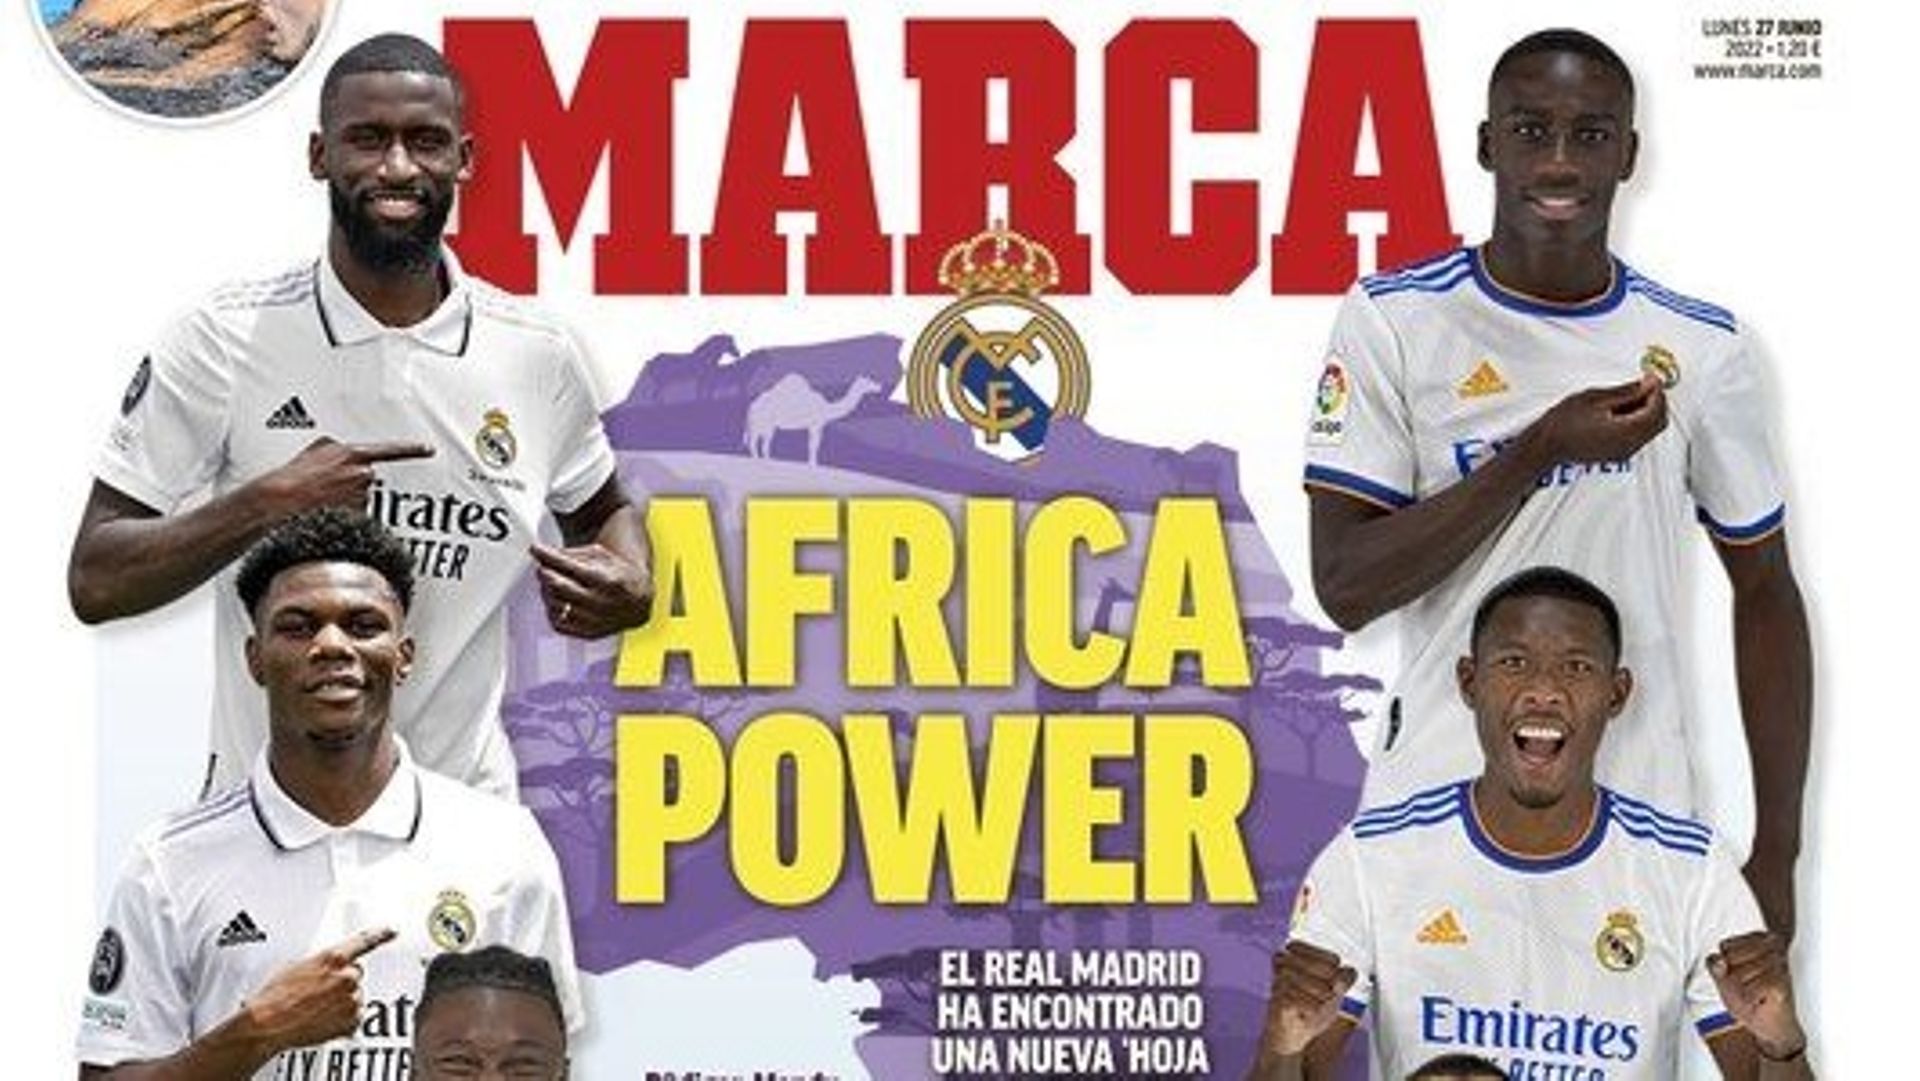 “Africa Power”, la prima pagina di Marka che fa parlare la gente